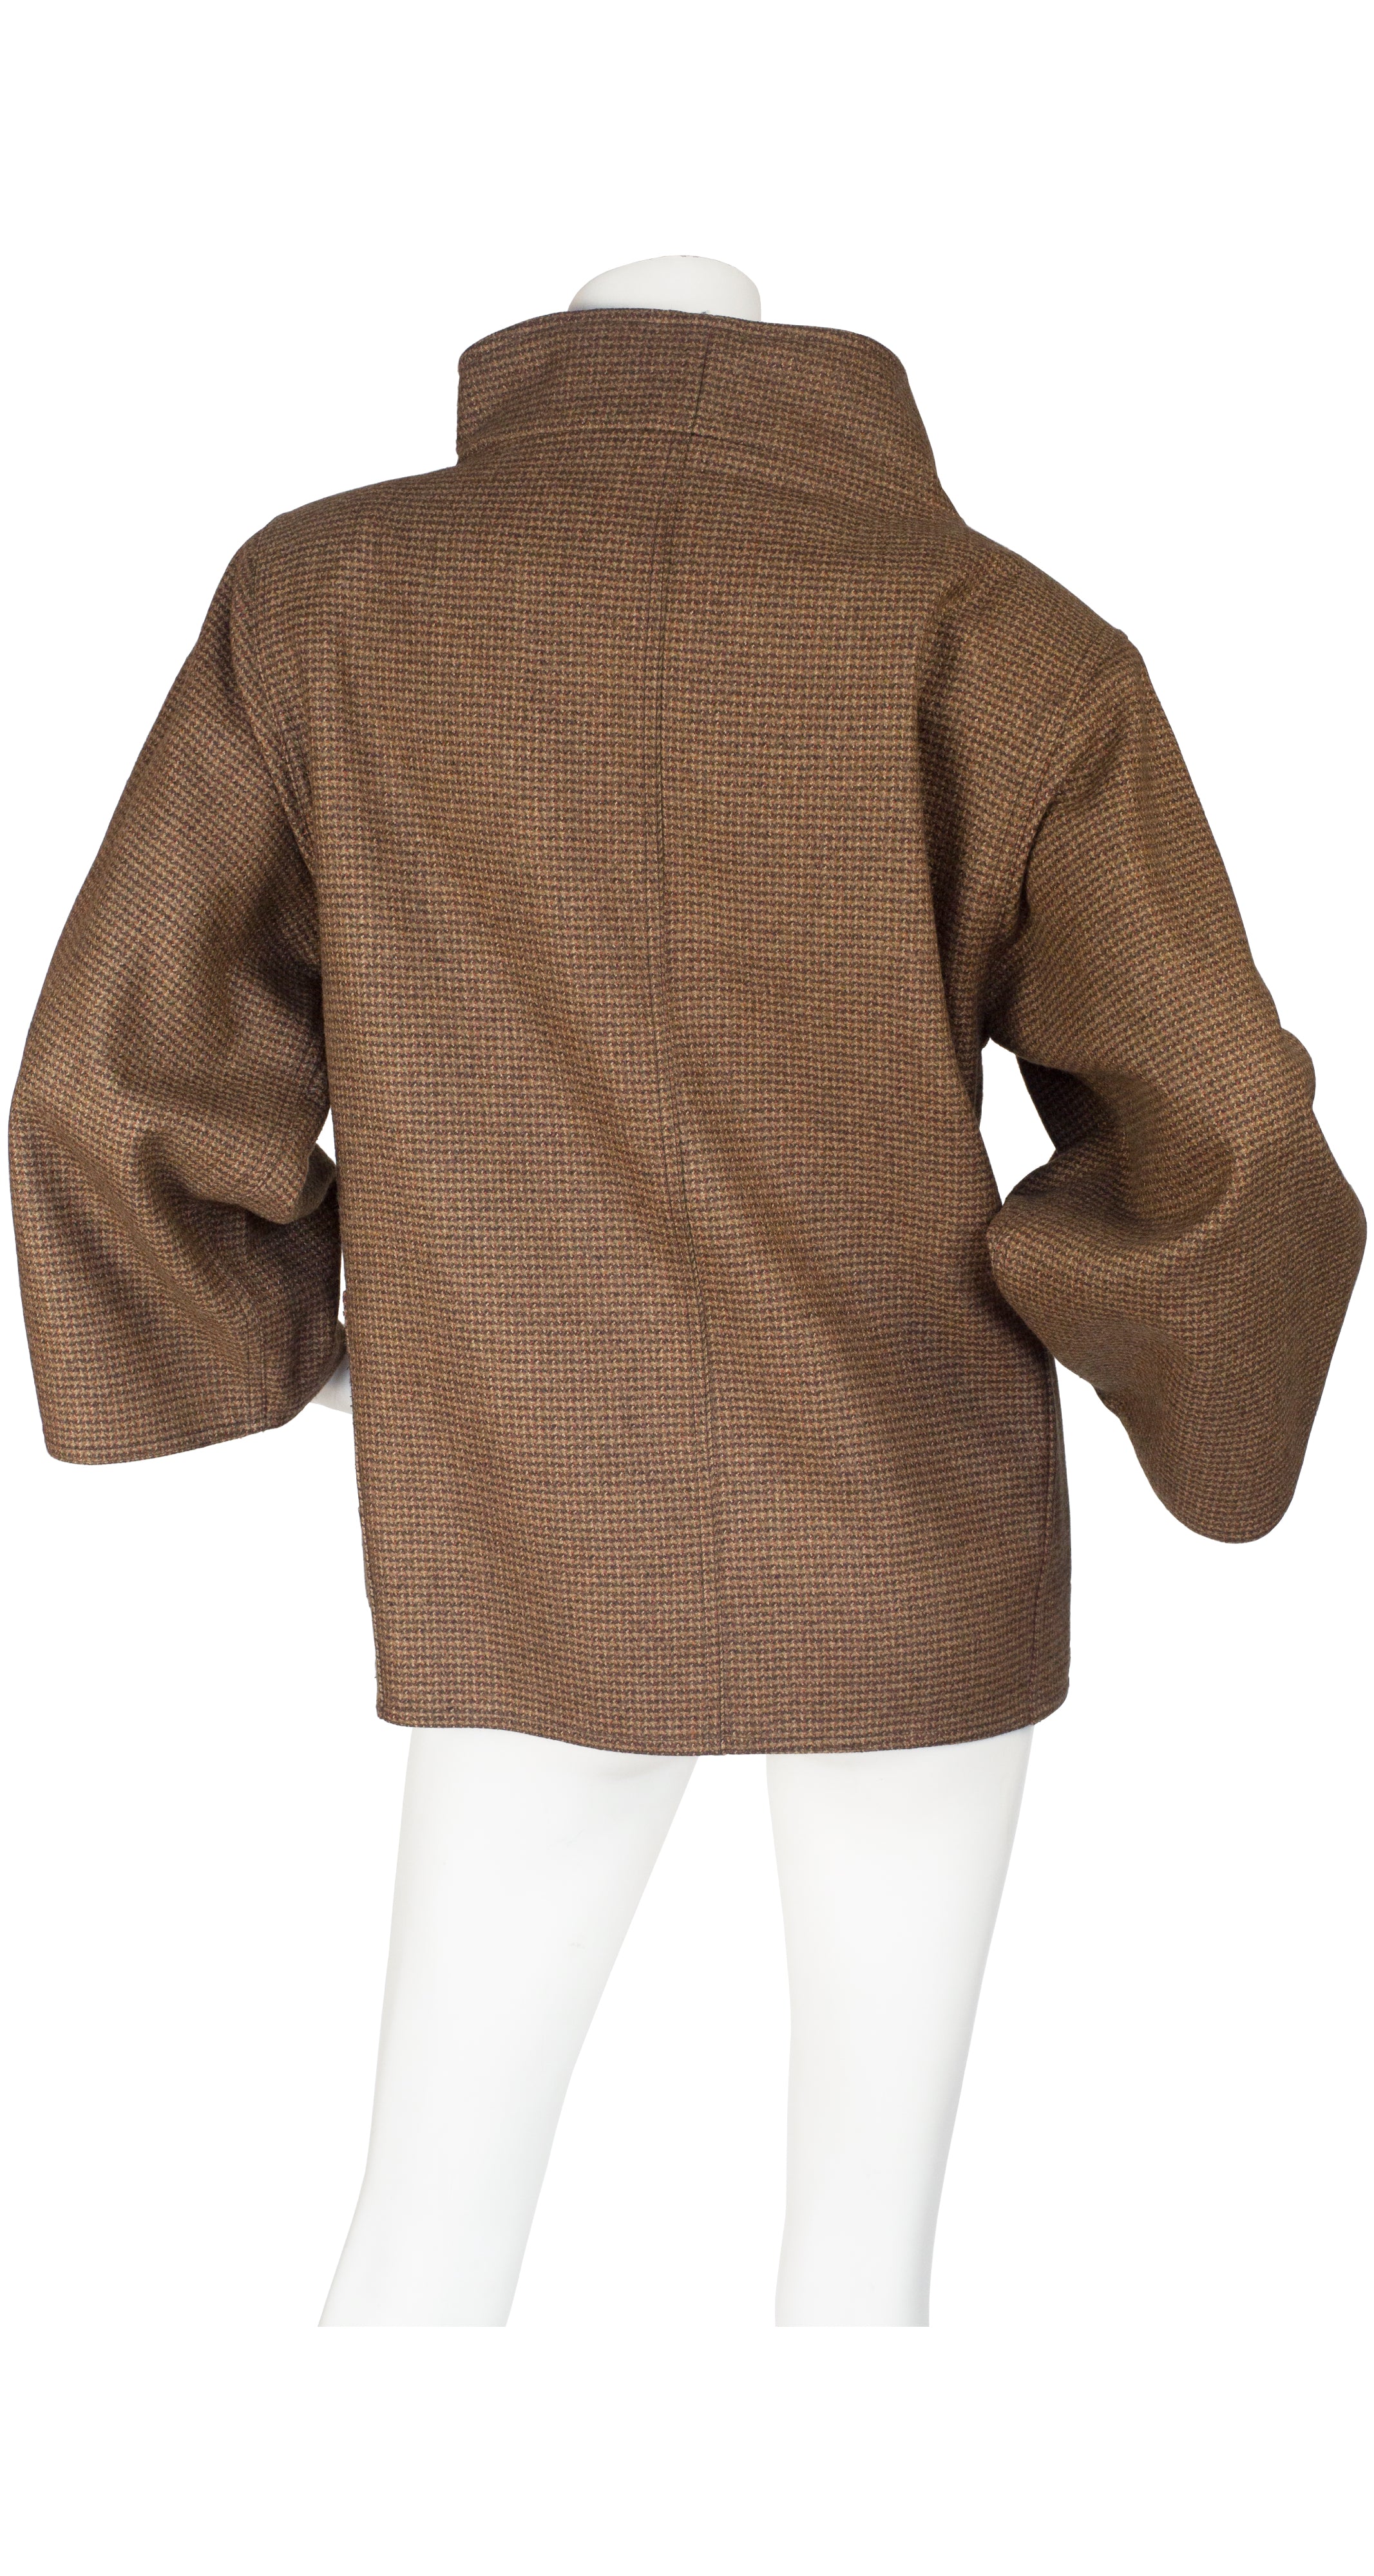 1980s Sculptural Brown Tweed Wool Jacket